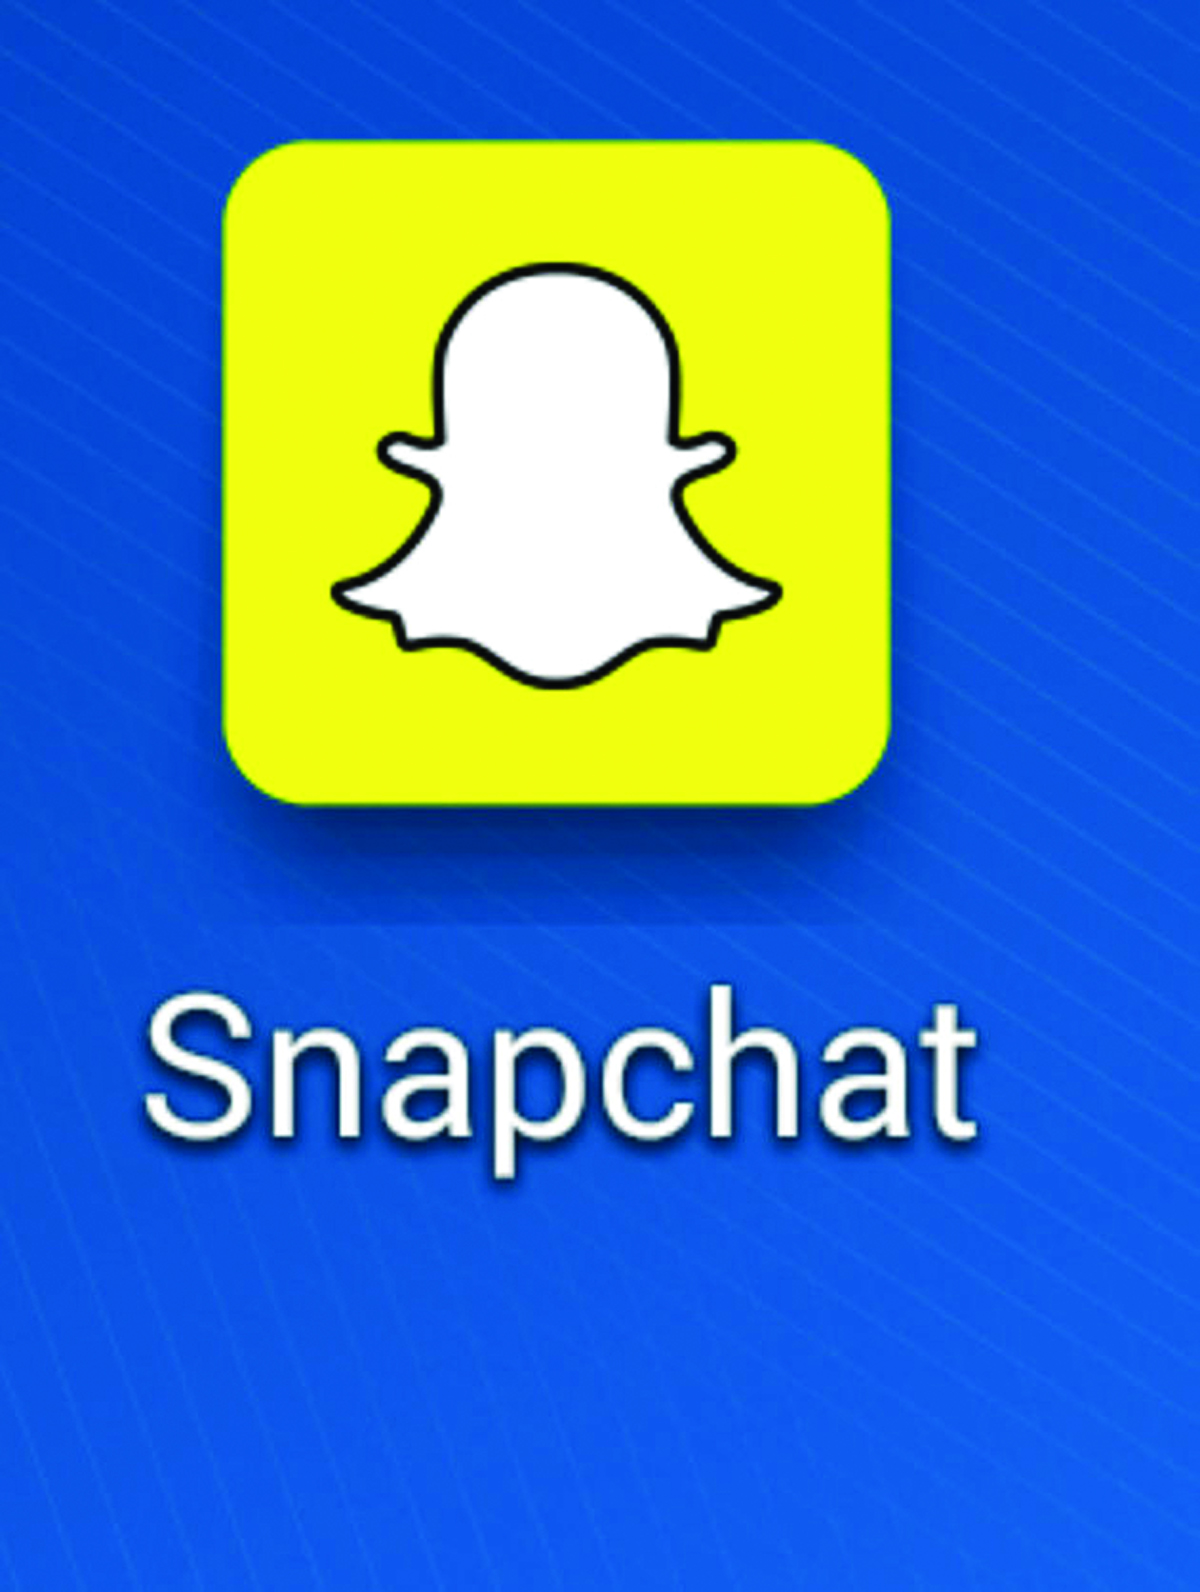 Snapchat name add fan image